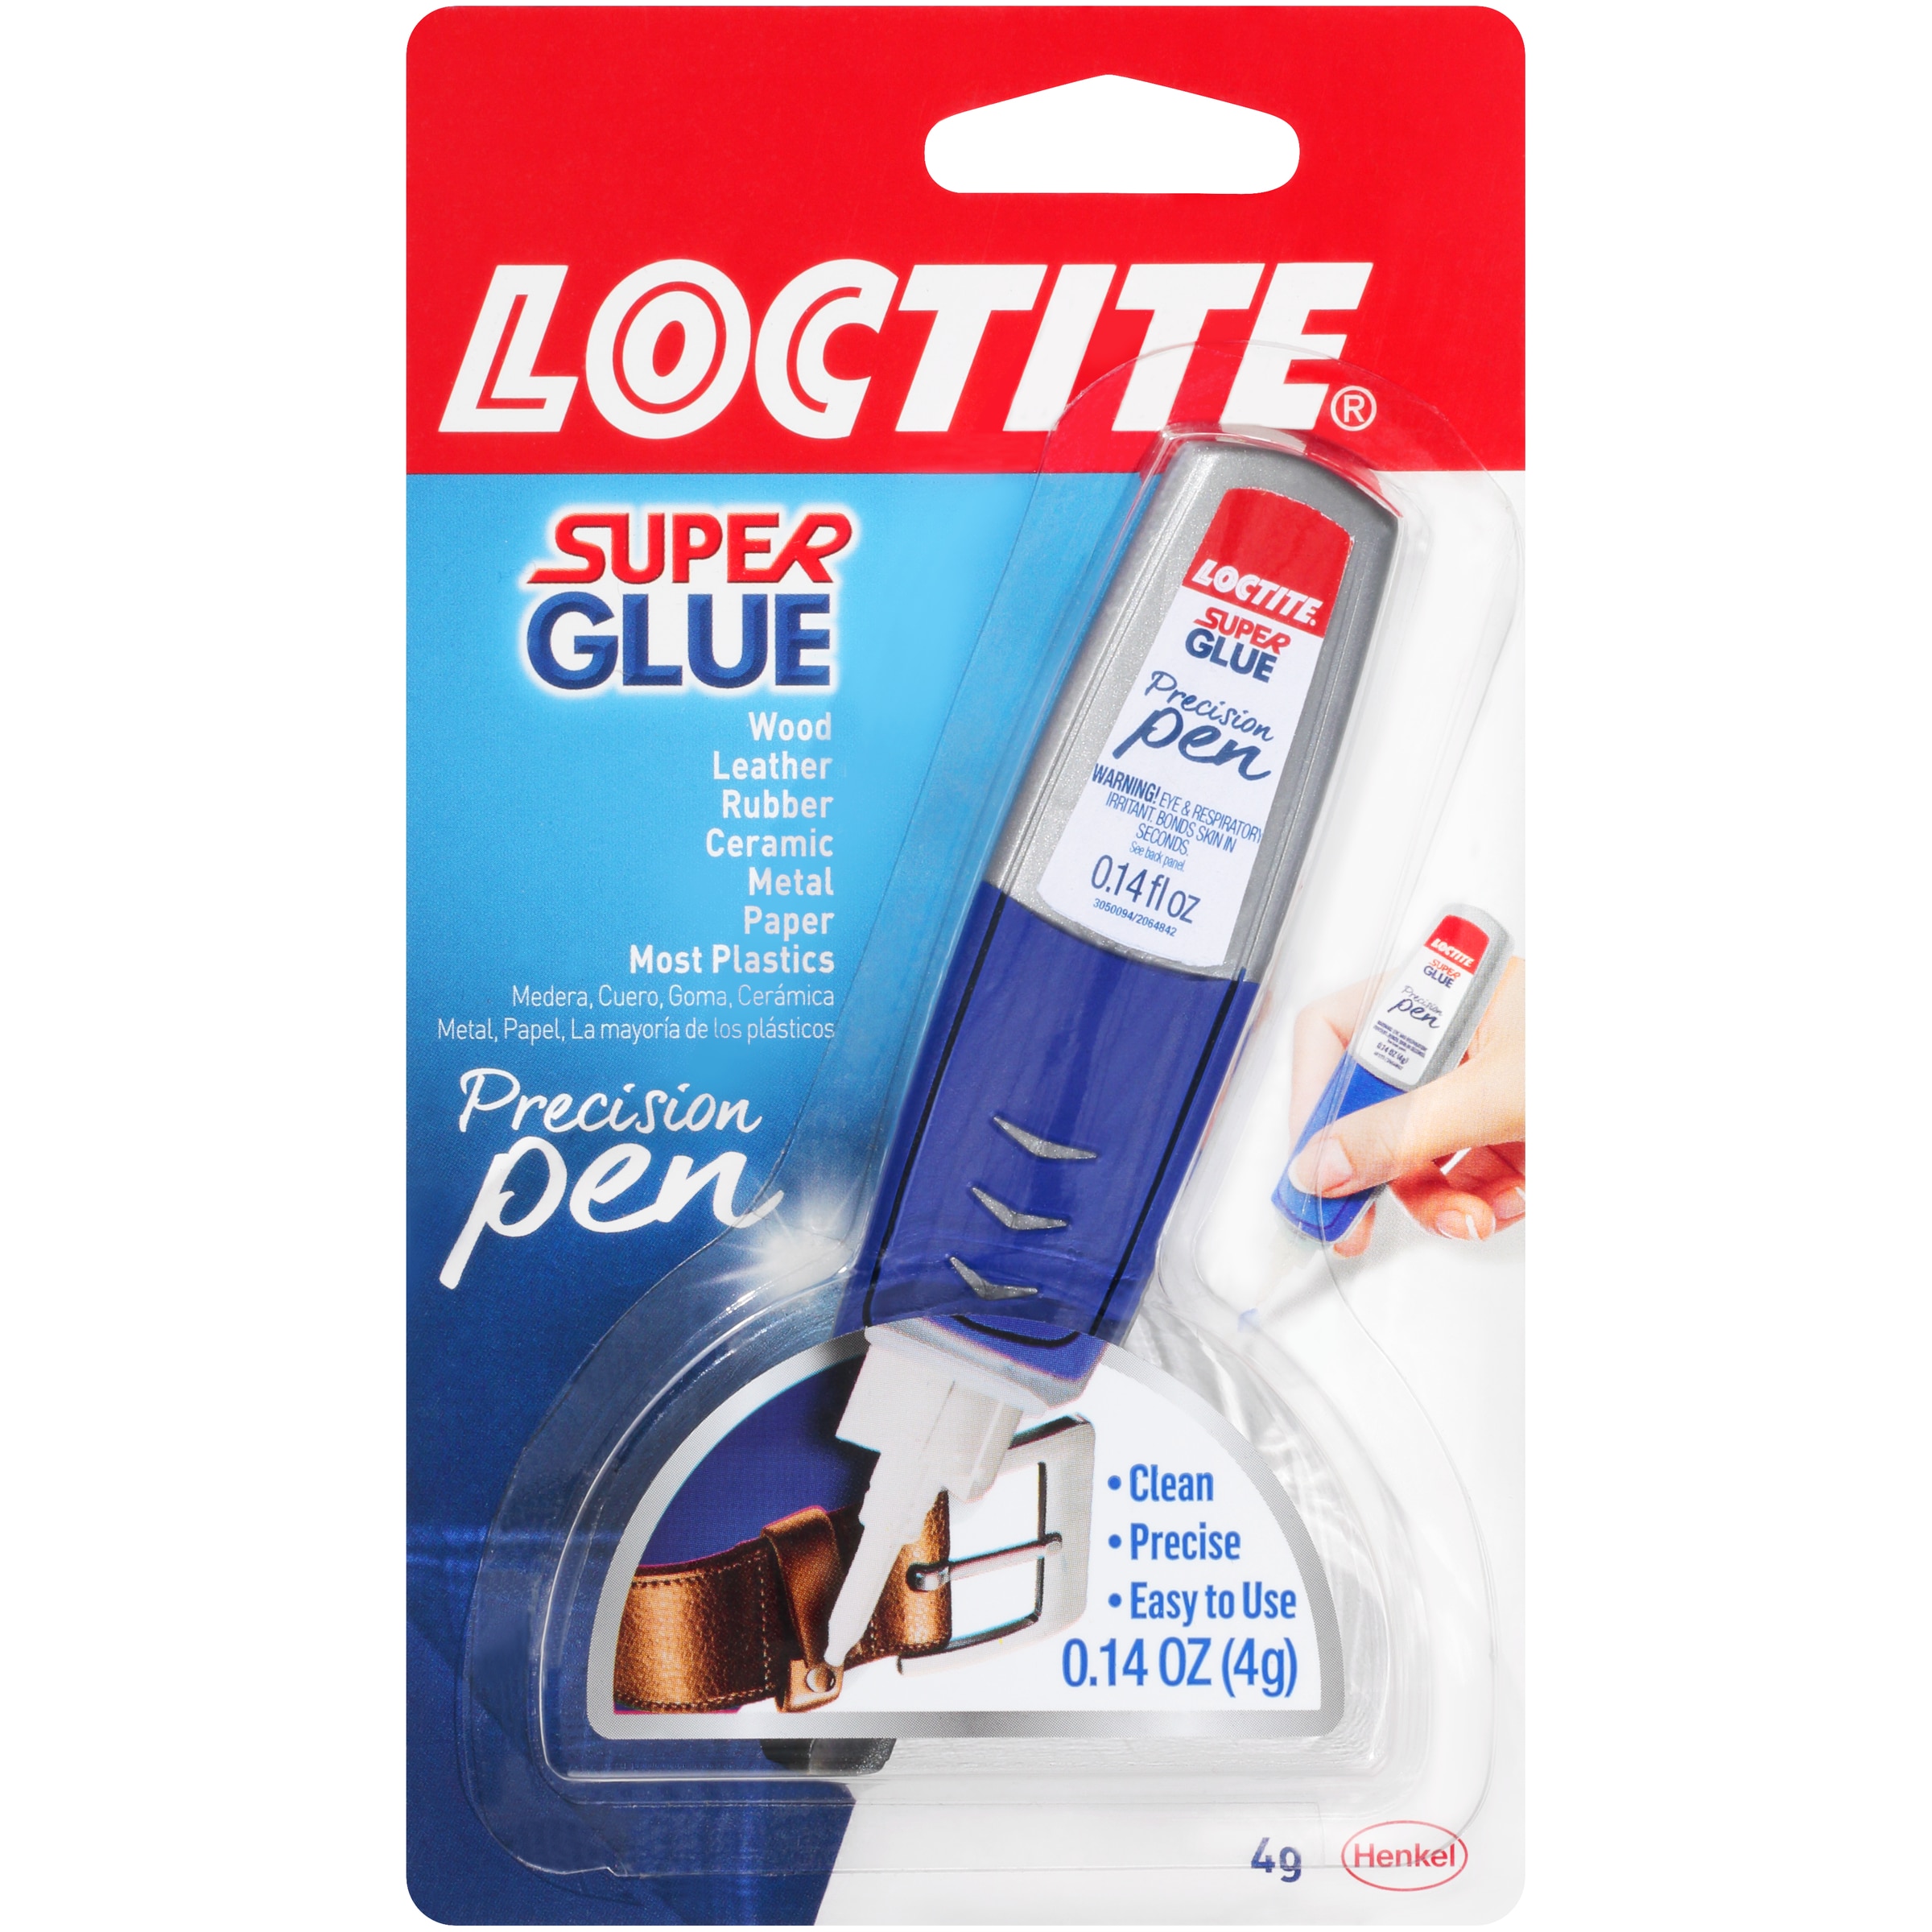 LOCTITE Precision pen gel 4-gram Liquid Super Glue in the Super Glue  department at